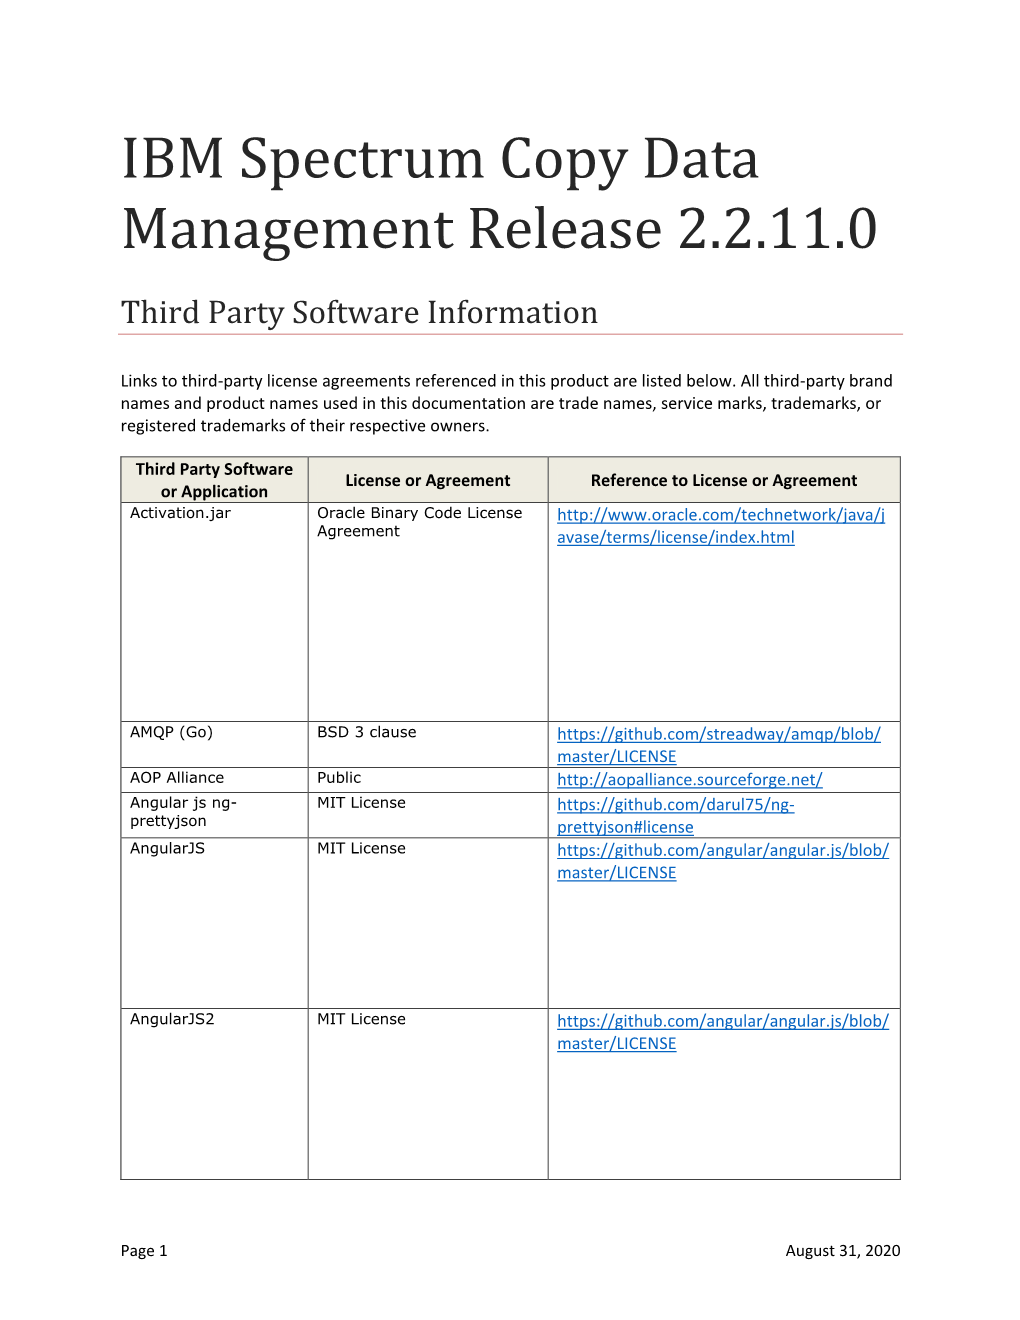 IBM Spectrum Copy Data Management Release 2.2.11.0